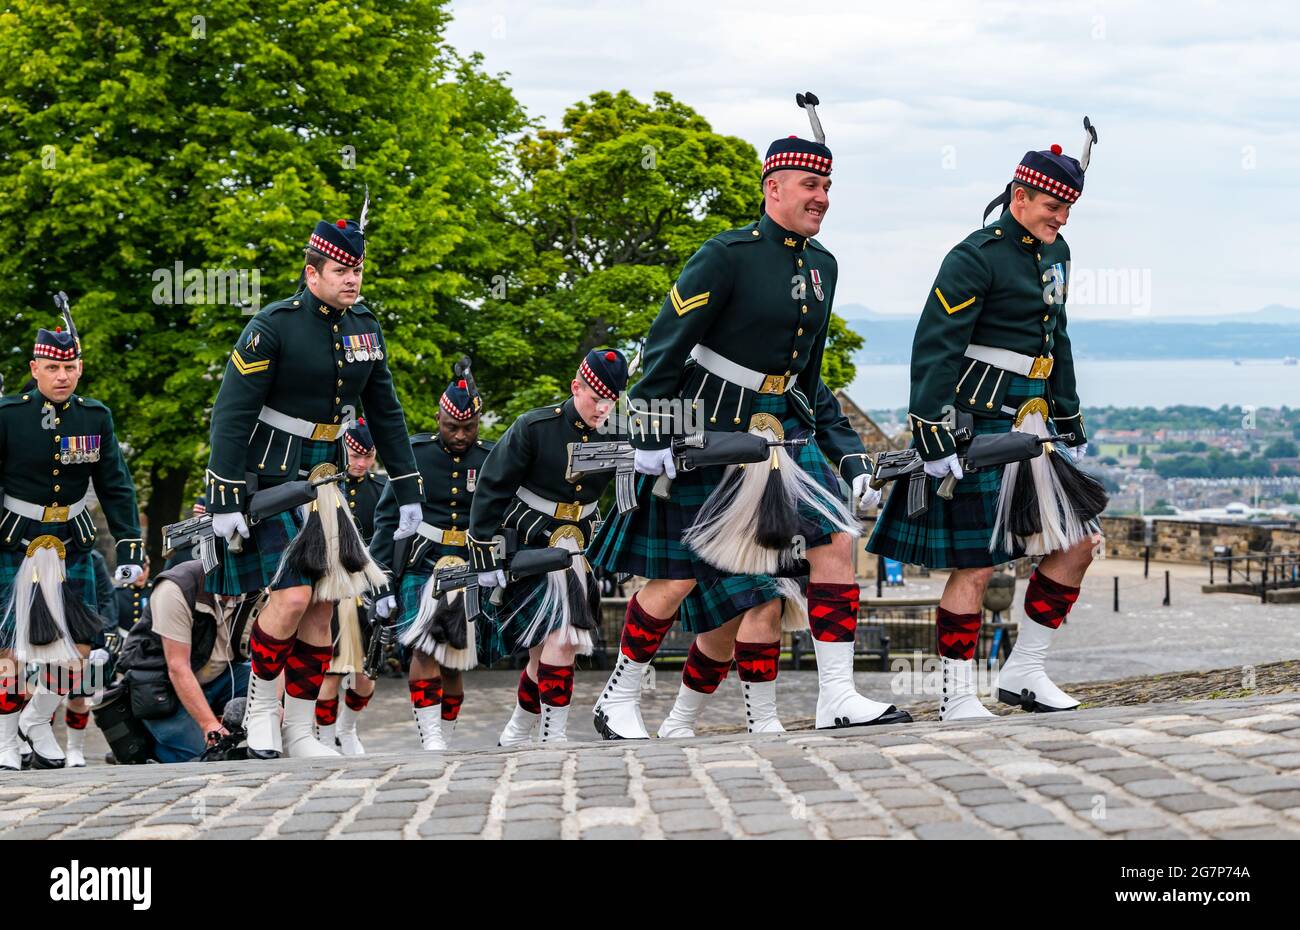 Soldaten des schottischen Militärregiments mit Gewehren in Kilt-Uniformen marschieren zu einer Zeremonie am Edinburgh Castle, Schottland, Großbritannien Stockfoto